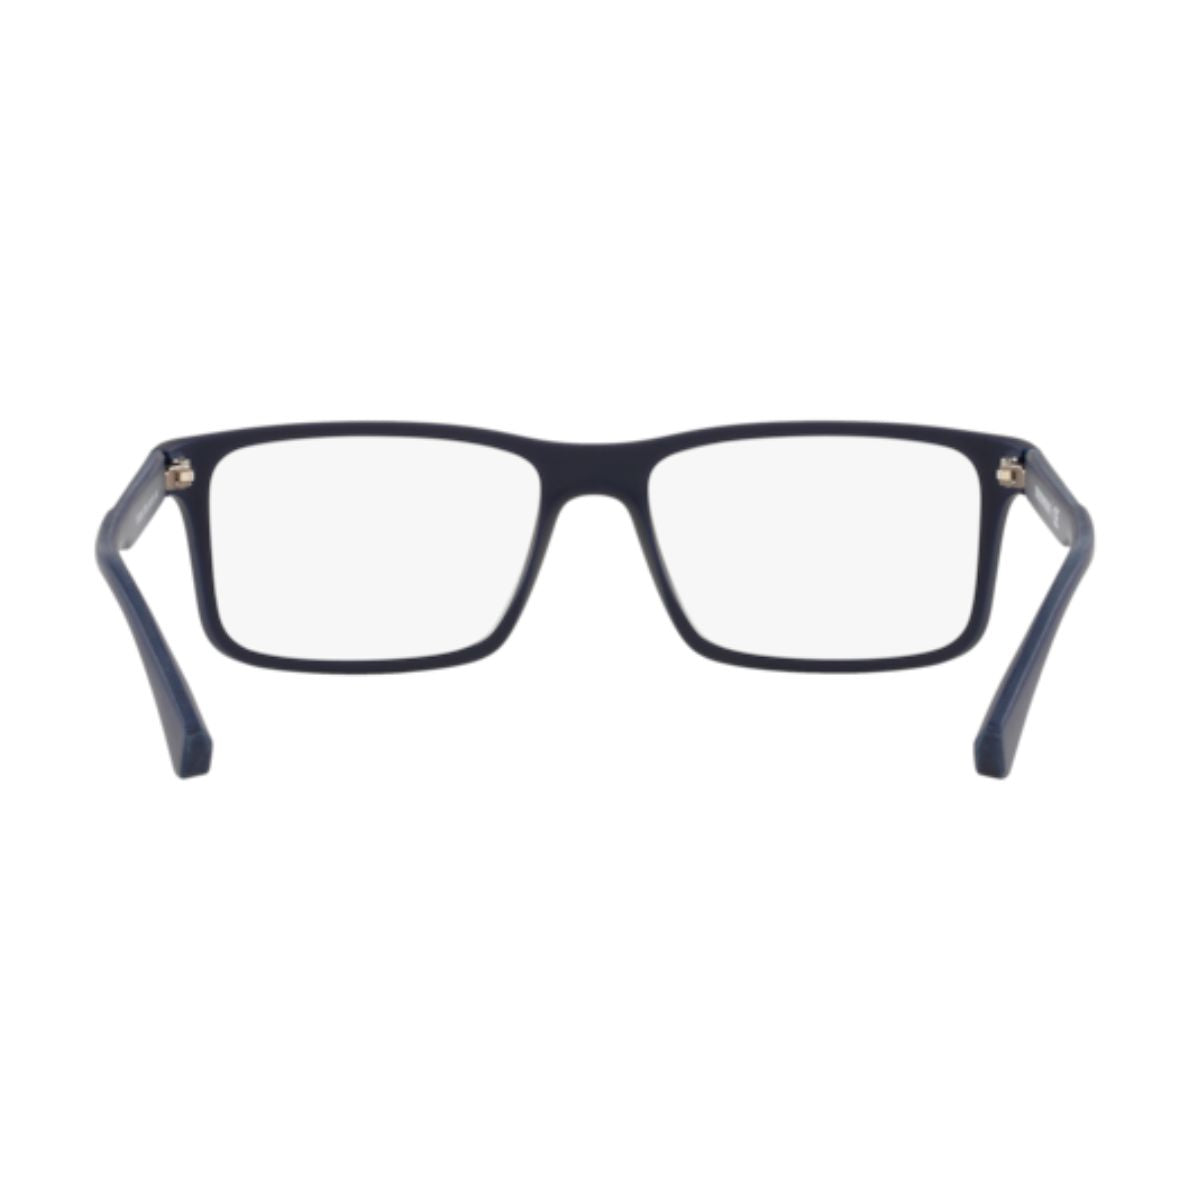 "Best Emporio Armani 3038 5754 Glasses Frame For Men's At Optorium"